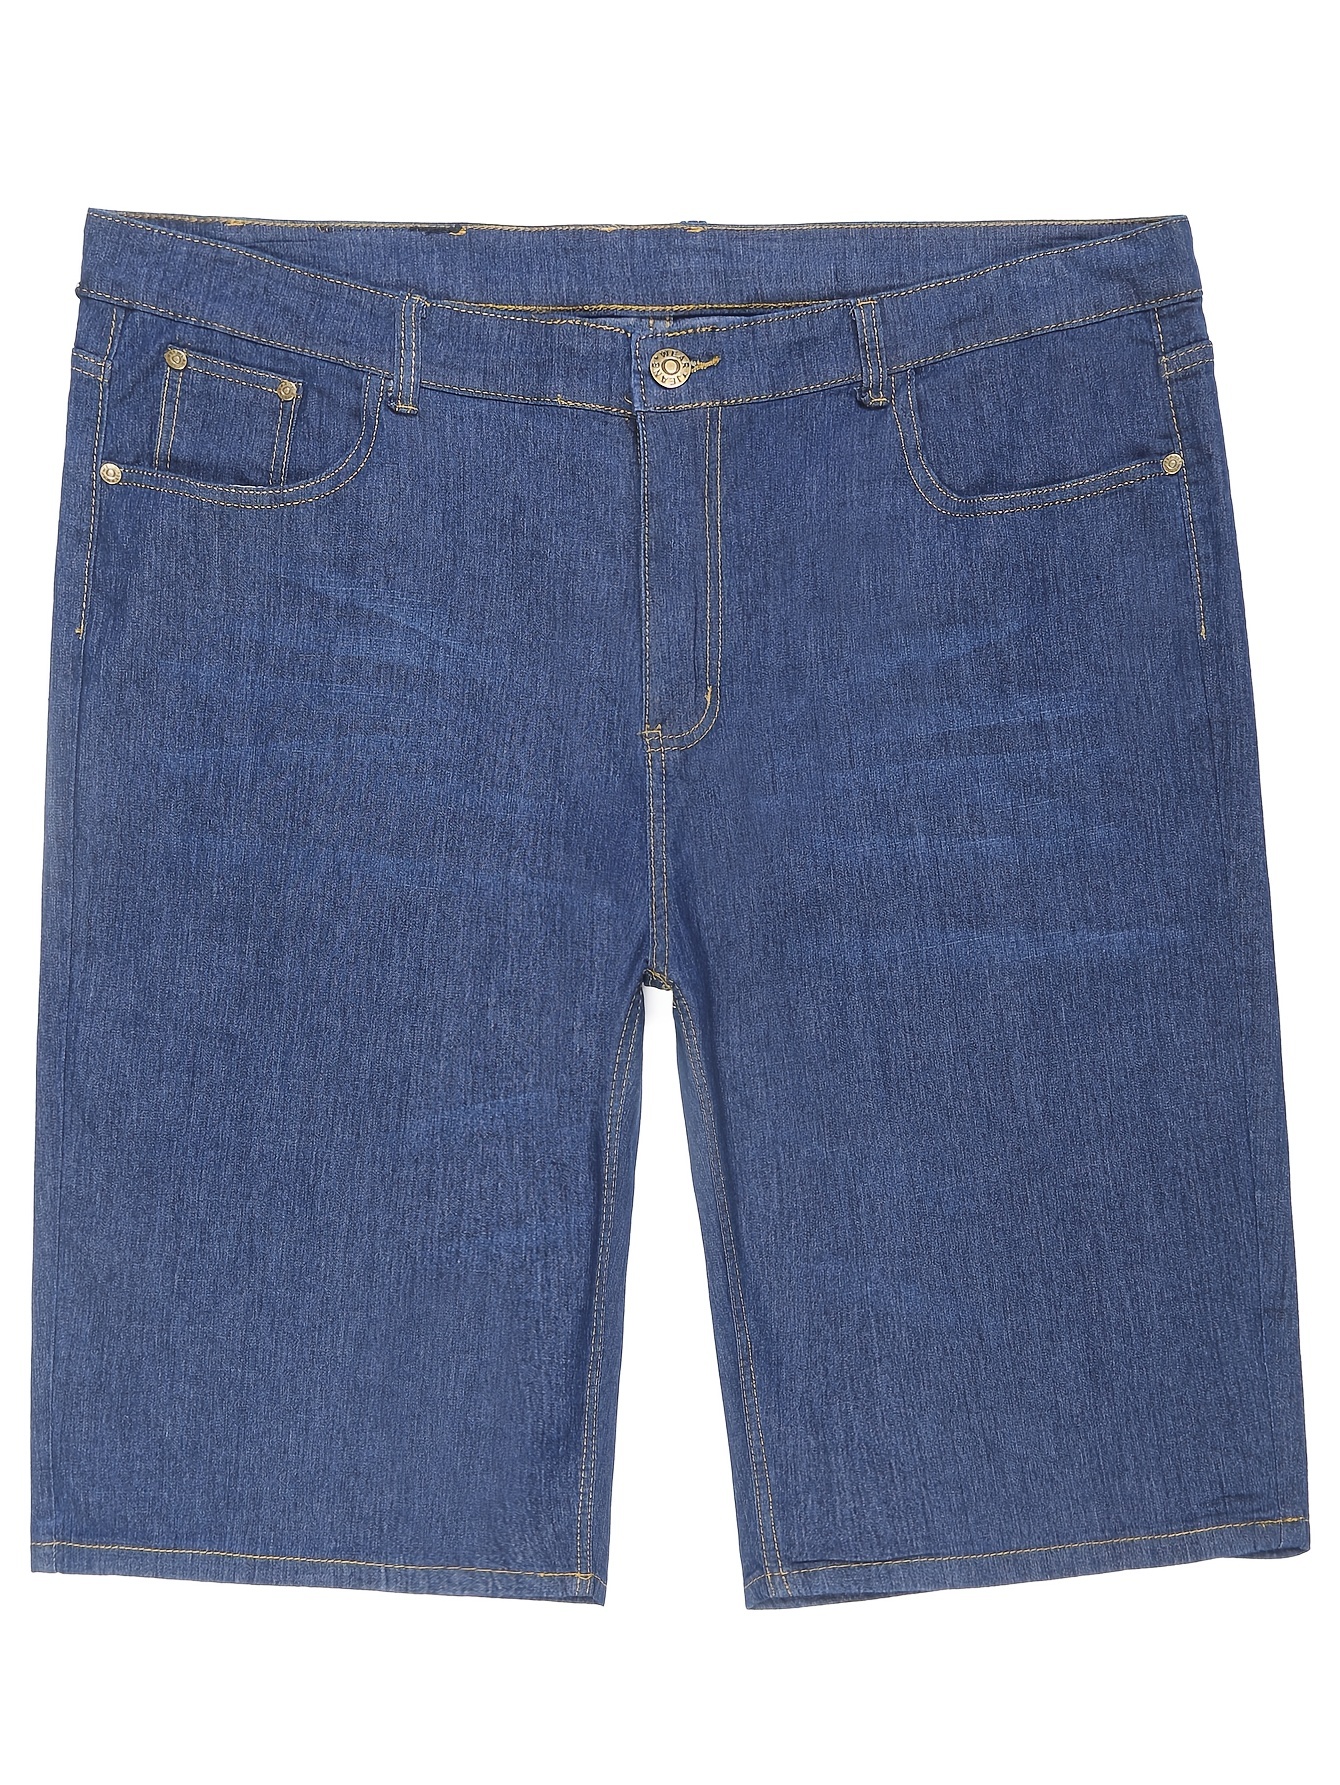 Men's Denim Shorts Mens Big size Loose baggy Short Jeans for Men